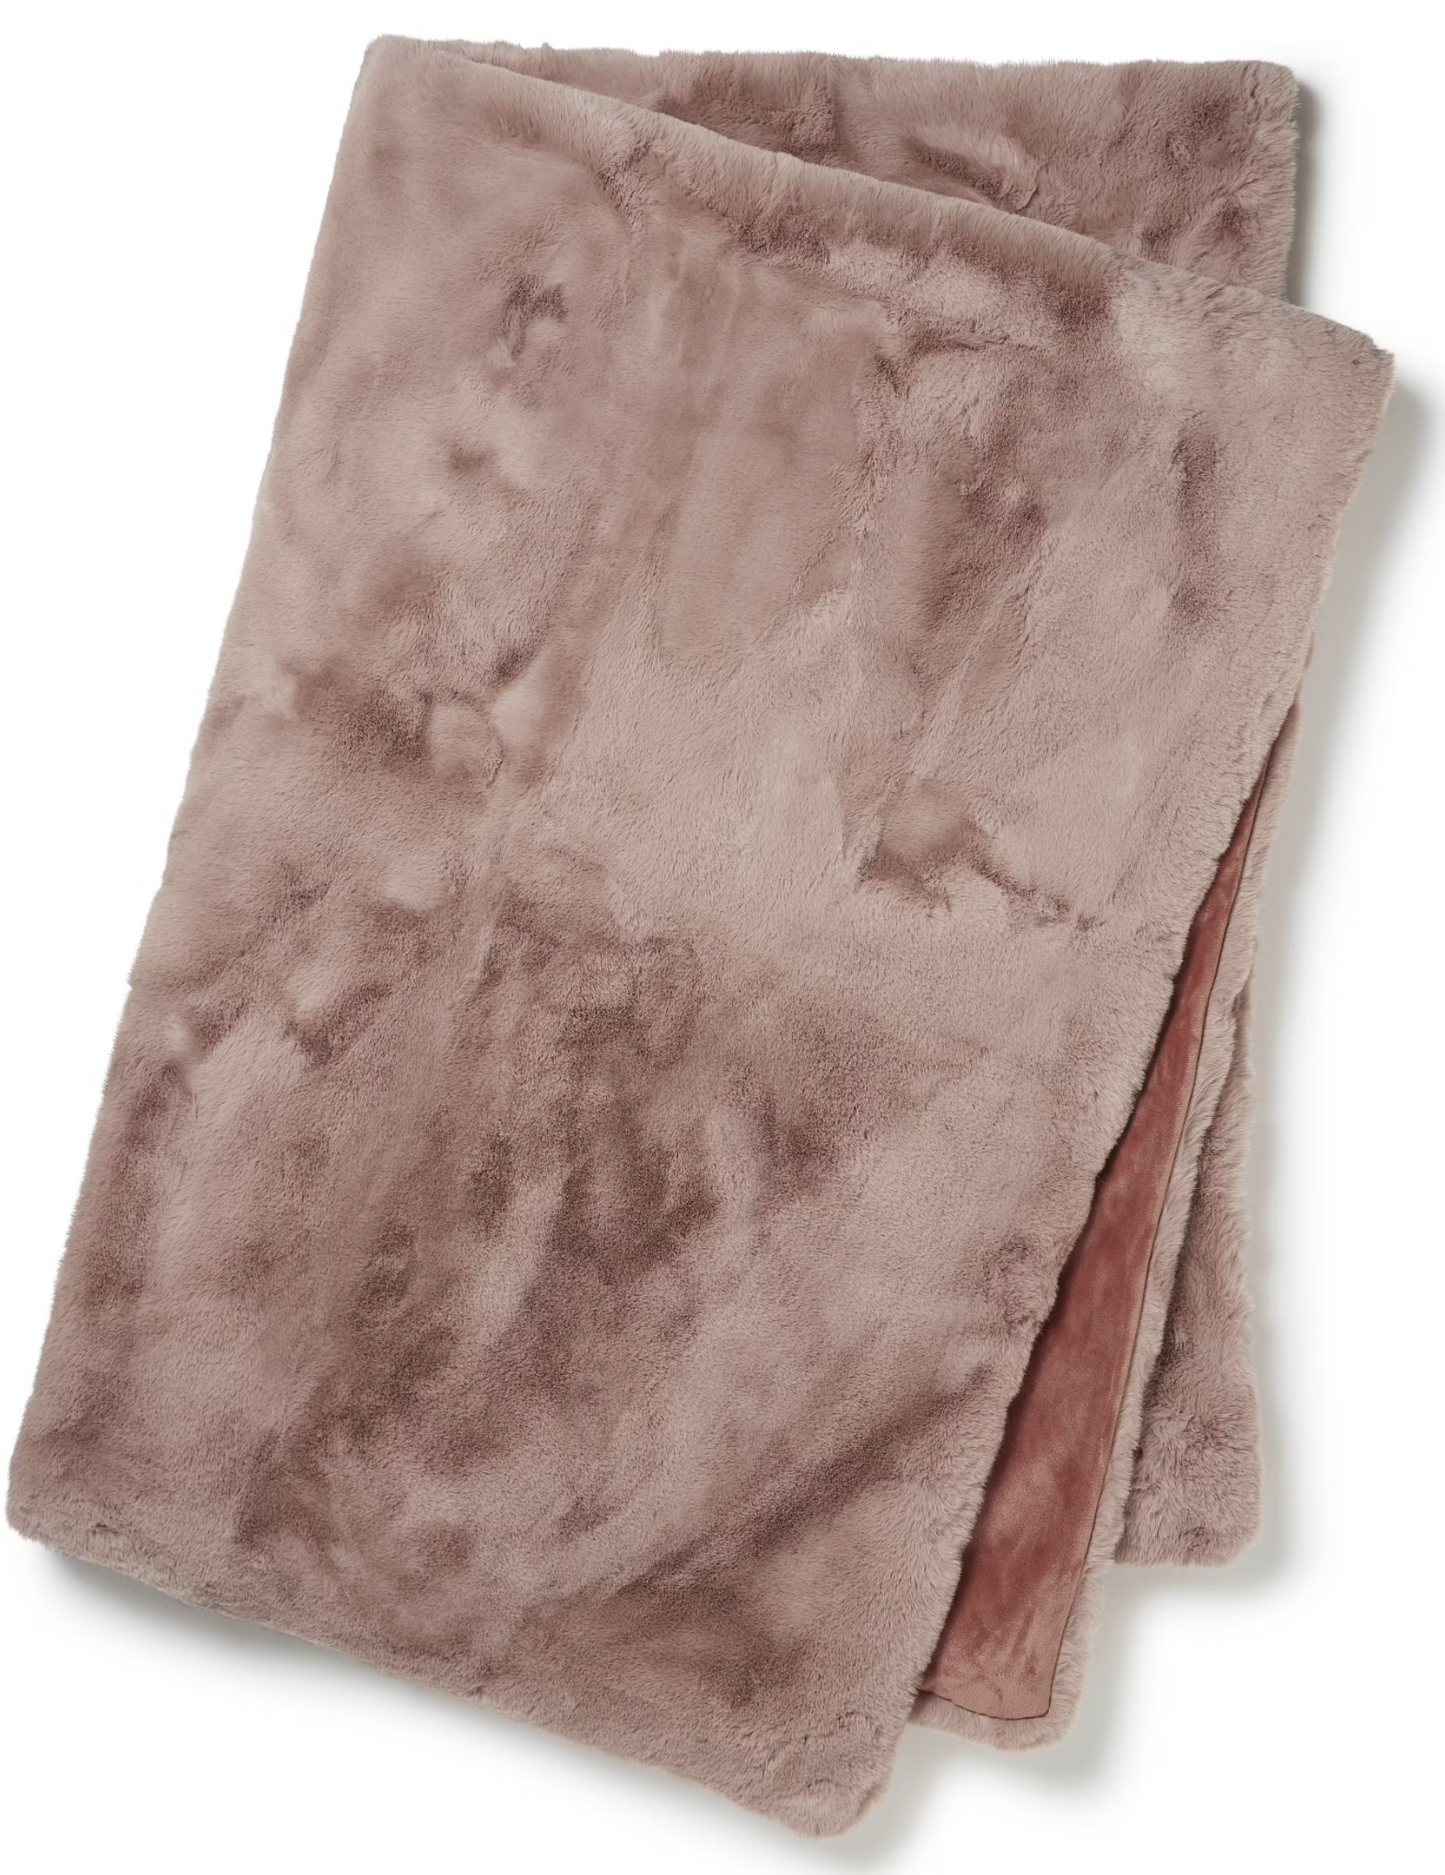 Fluffy faux fur blanket in dusky pink